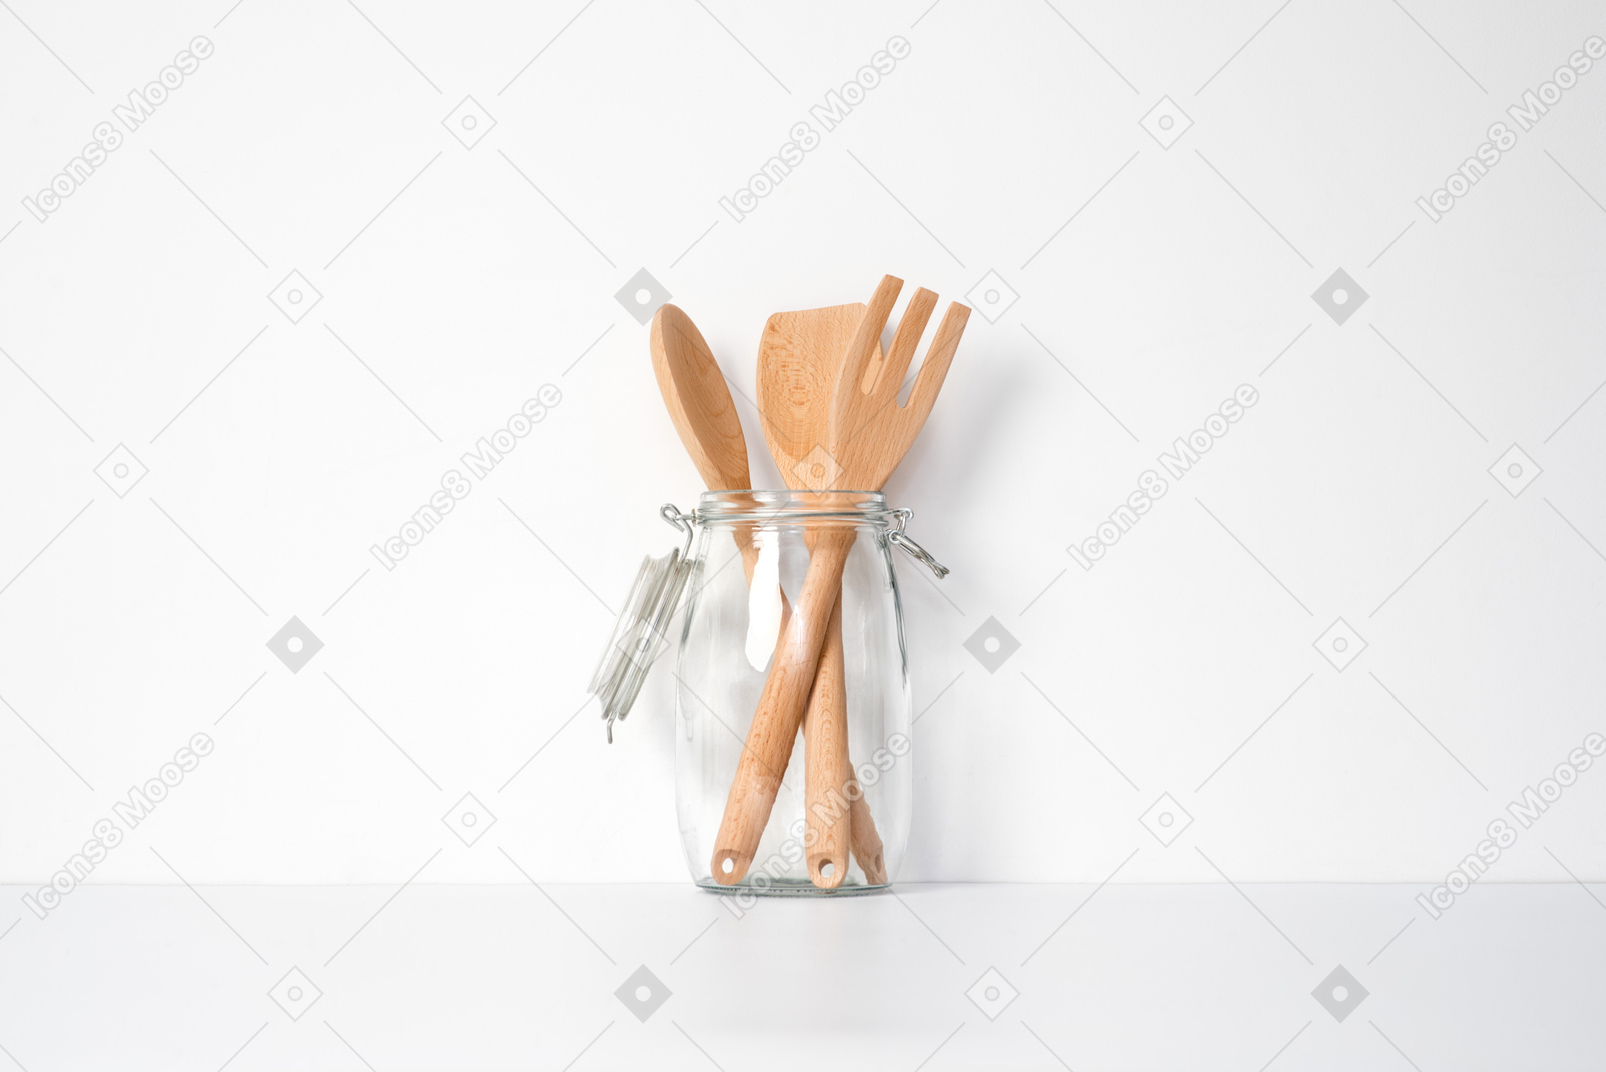 Wooden cutlery in glass jar